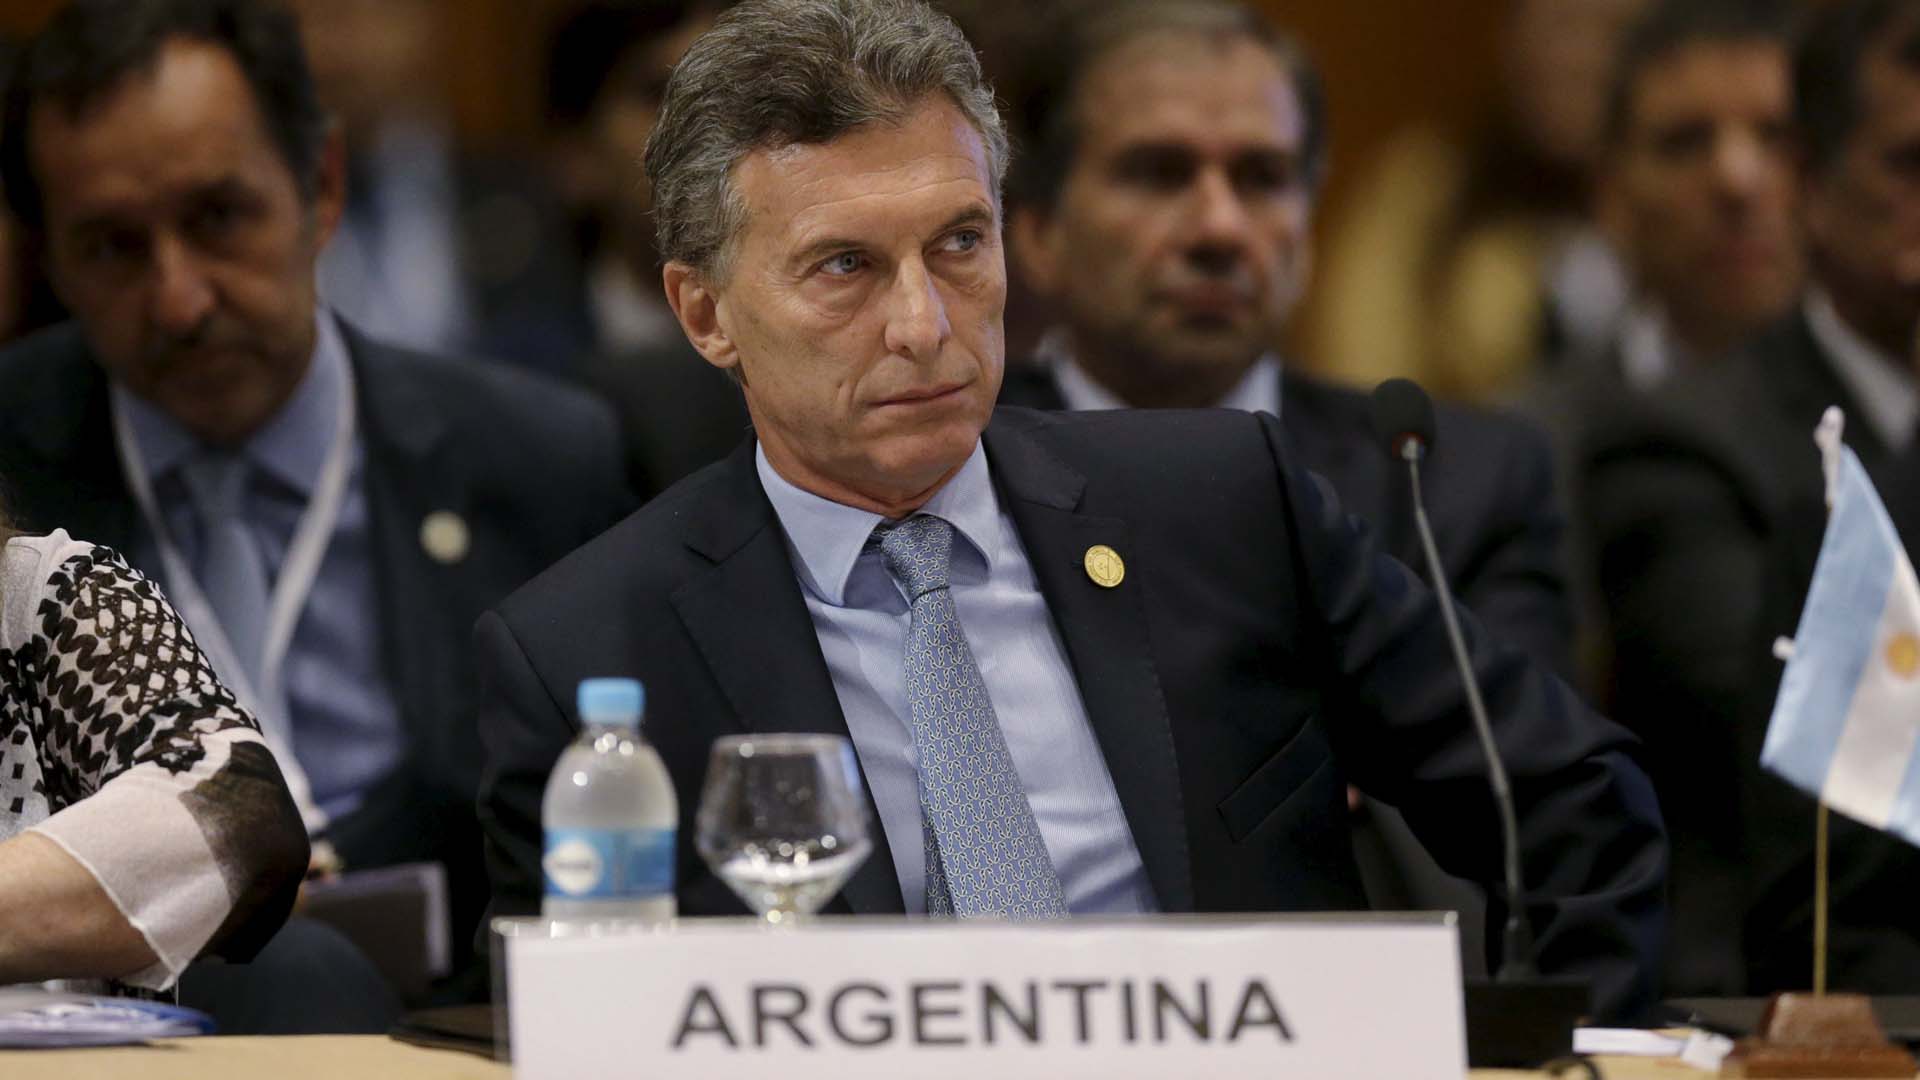 El primer mandatario argentino aseguró que el objetivo es aclarar las circunstancias de la muerte del fiscal